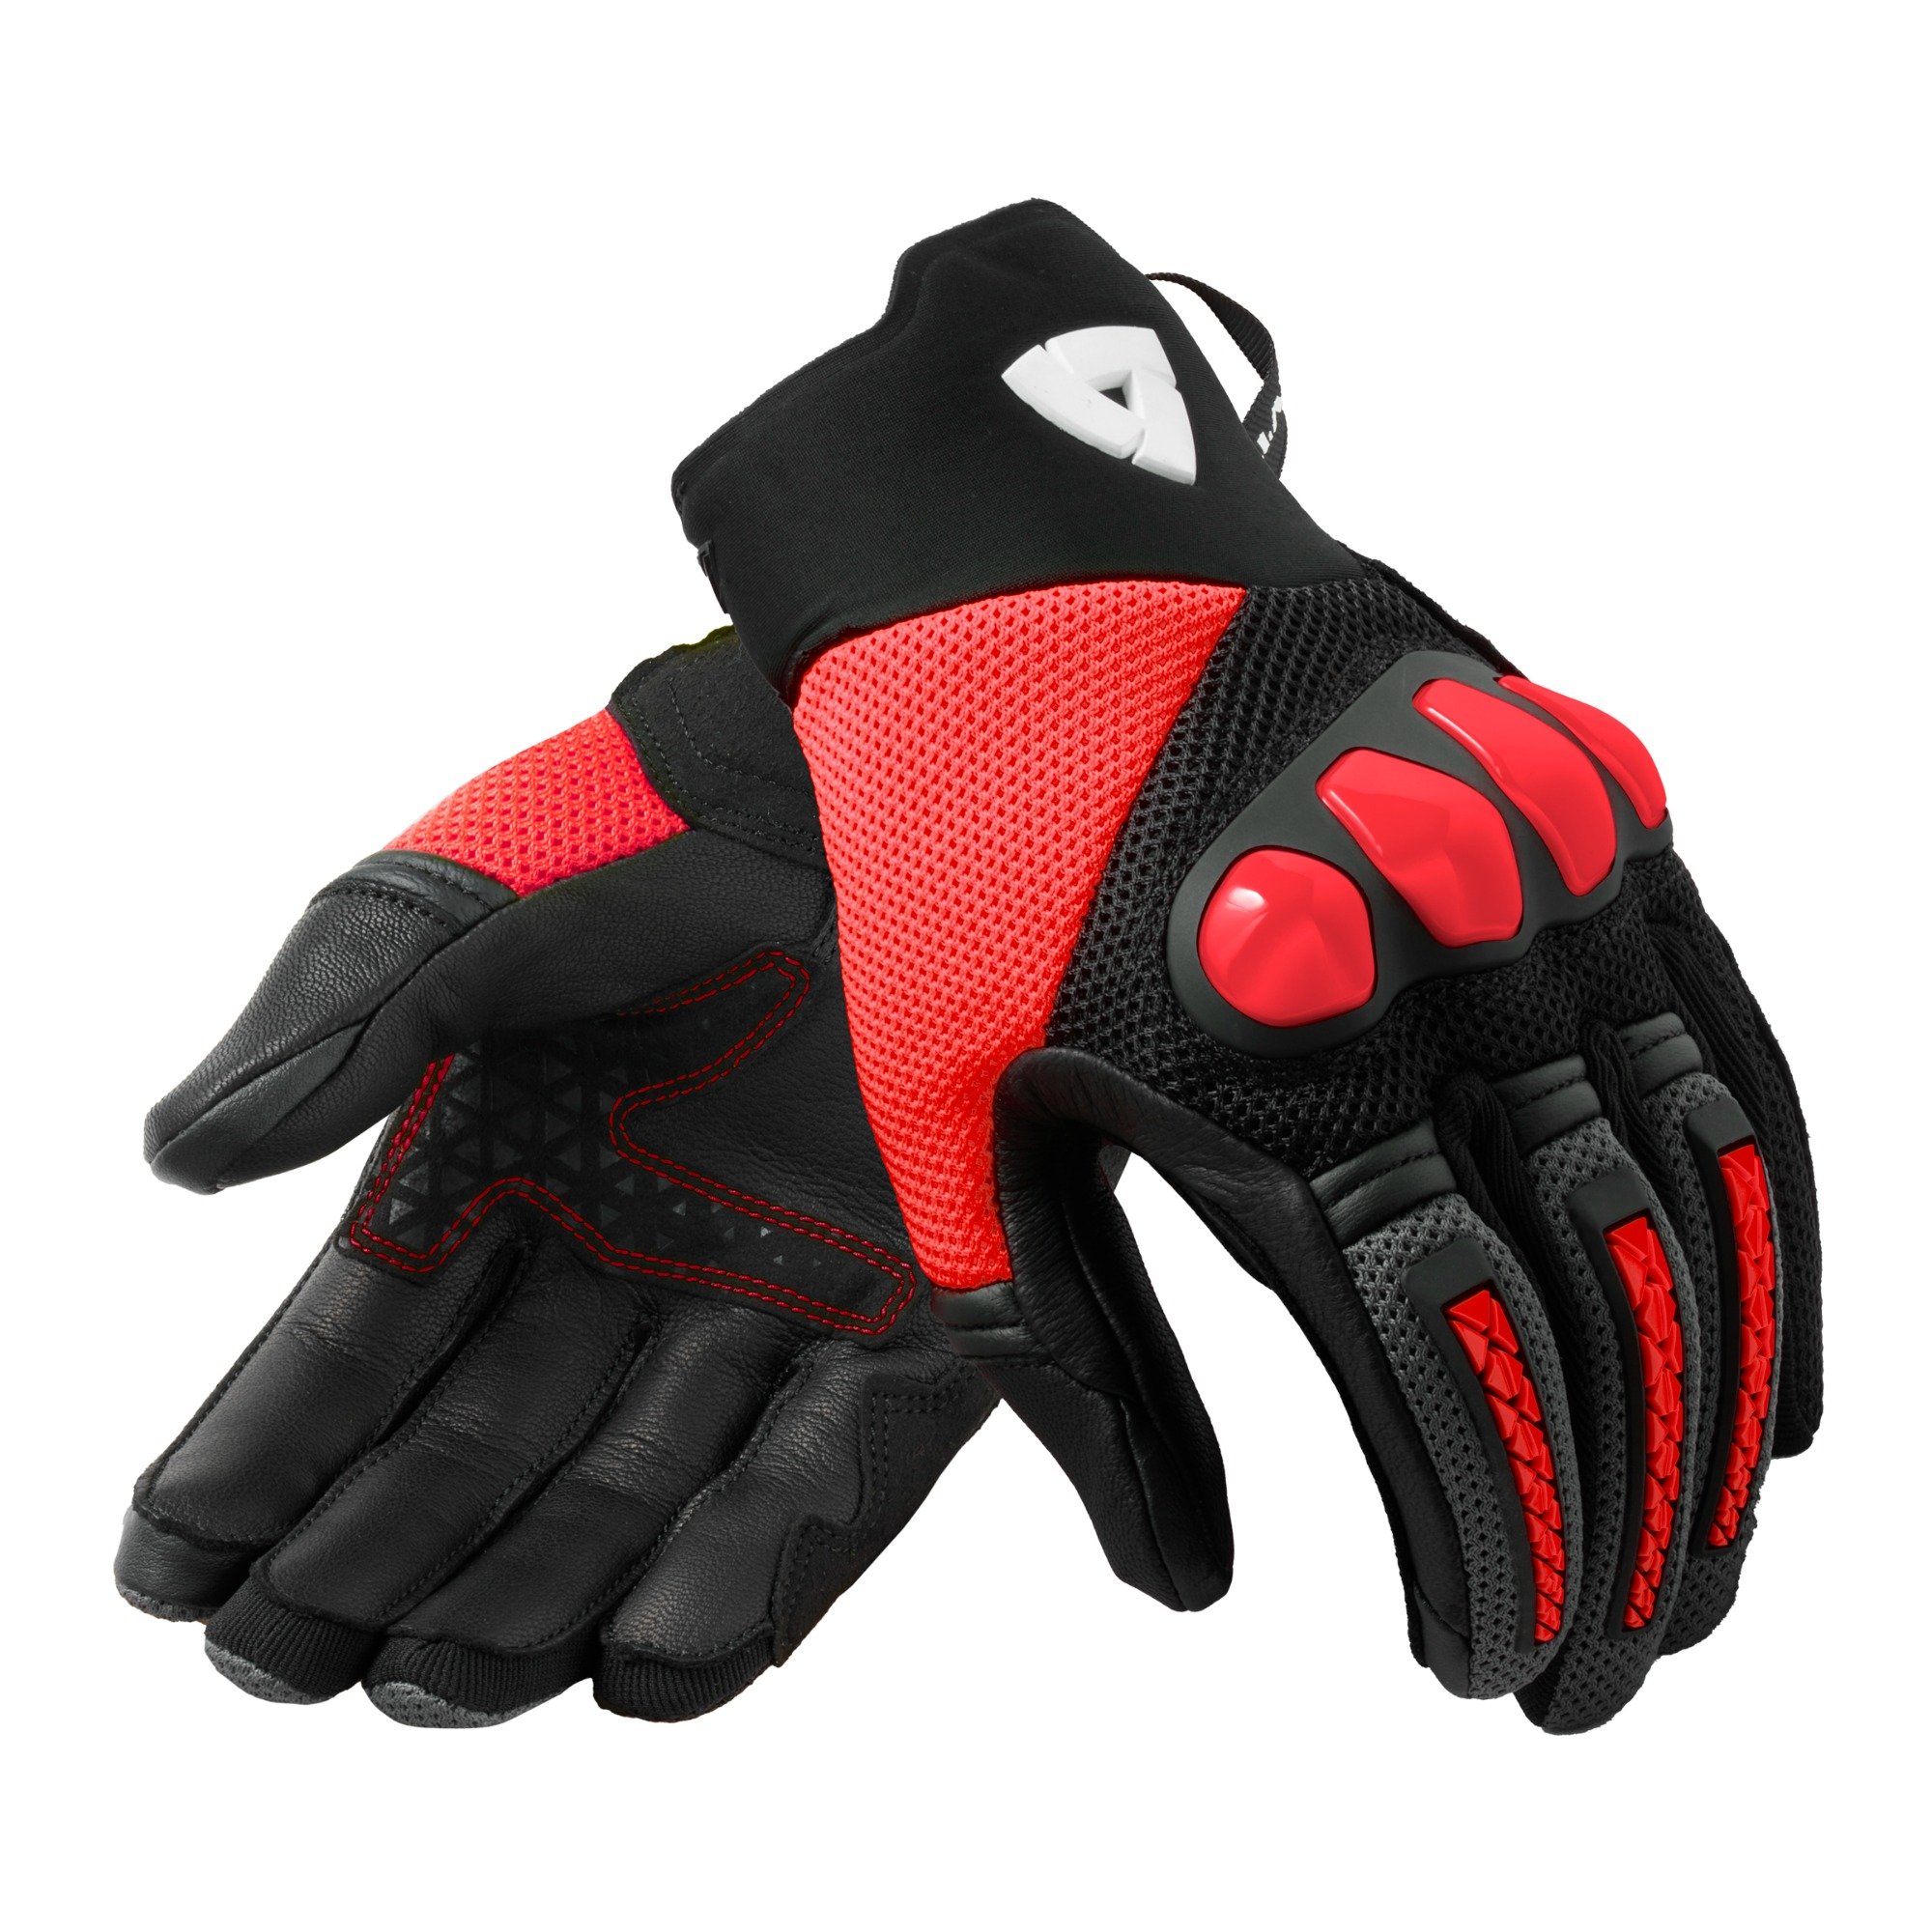 Image of REV'IT! Gloves Speedart Air Black Neon Red Size 2XL ID 8700001361033